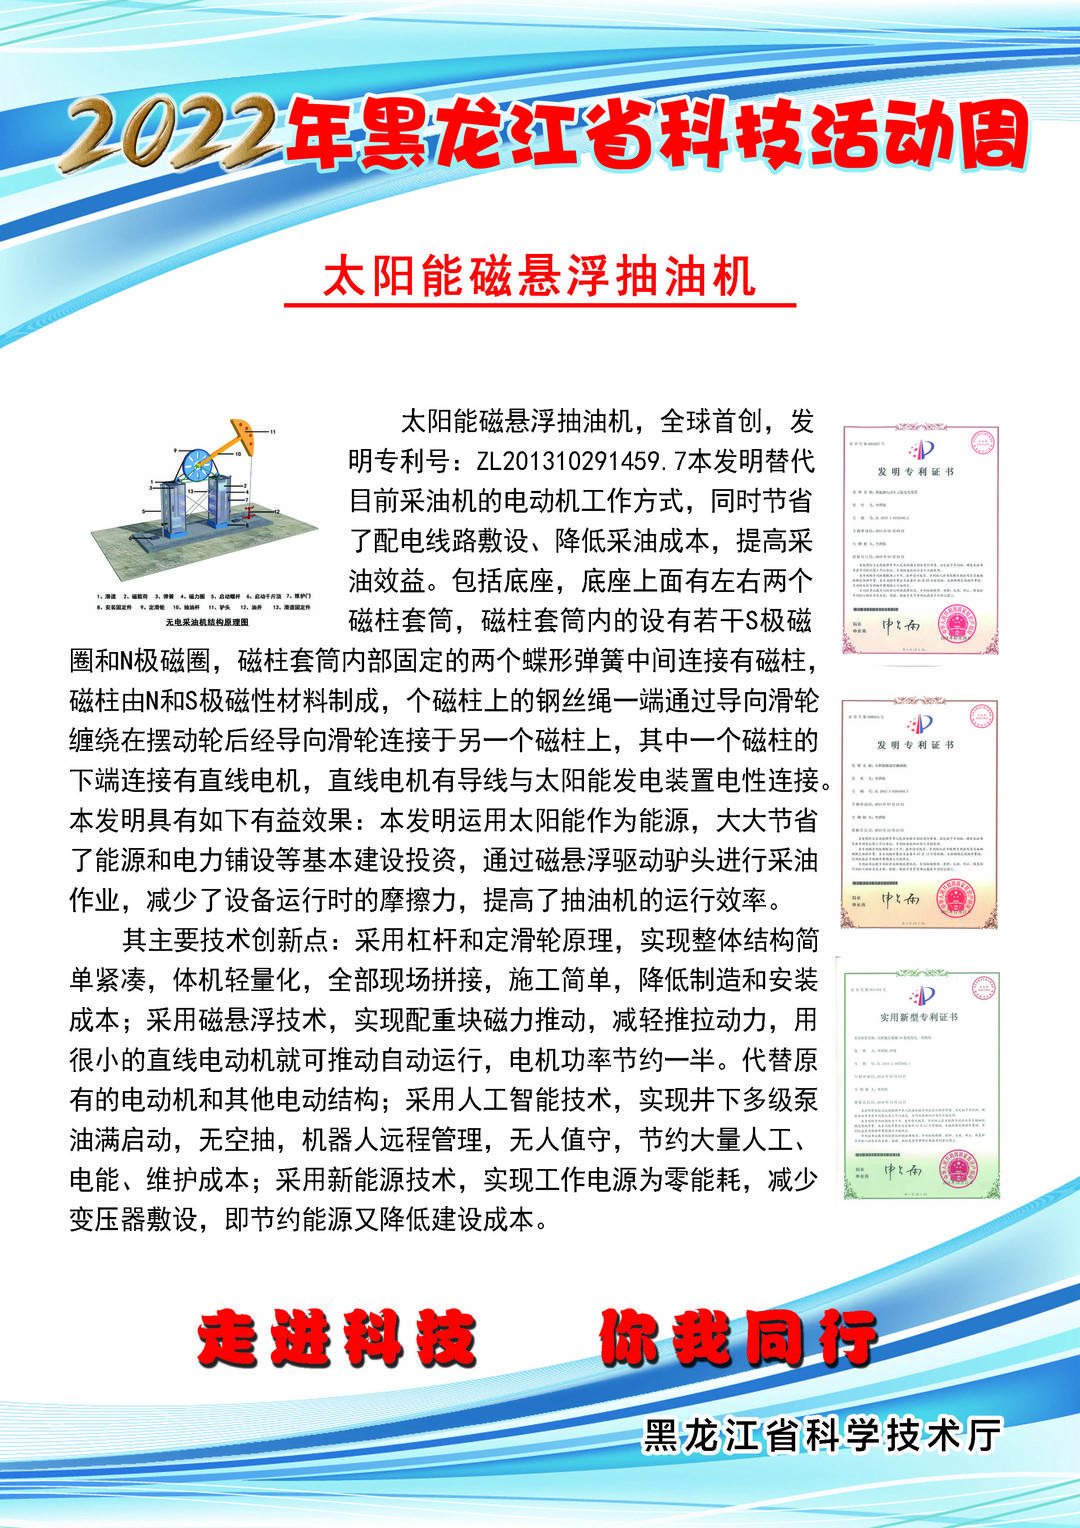 黑龙江省科技创新成果展丨太阳能磁悬浮抽油机